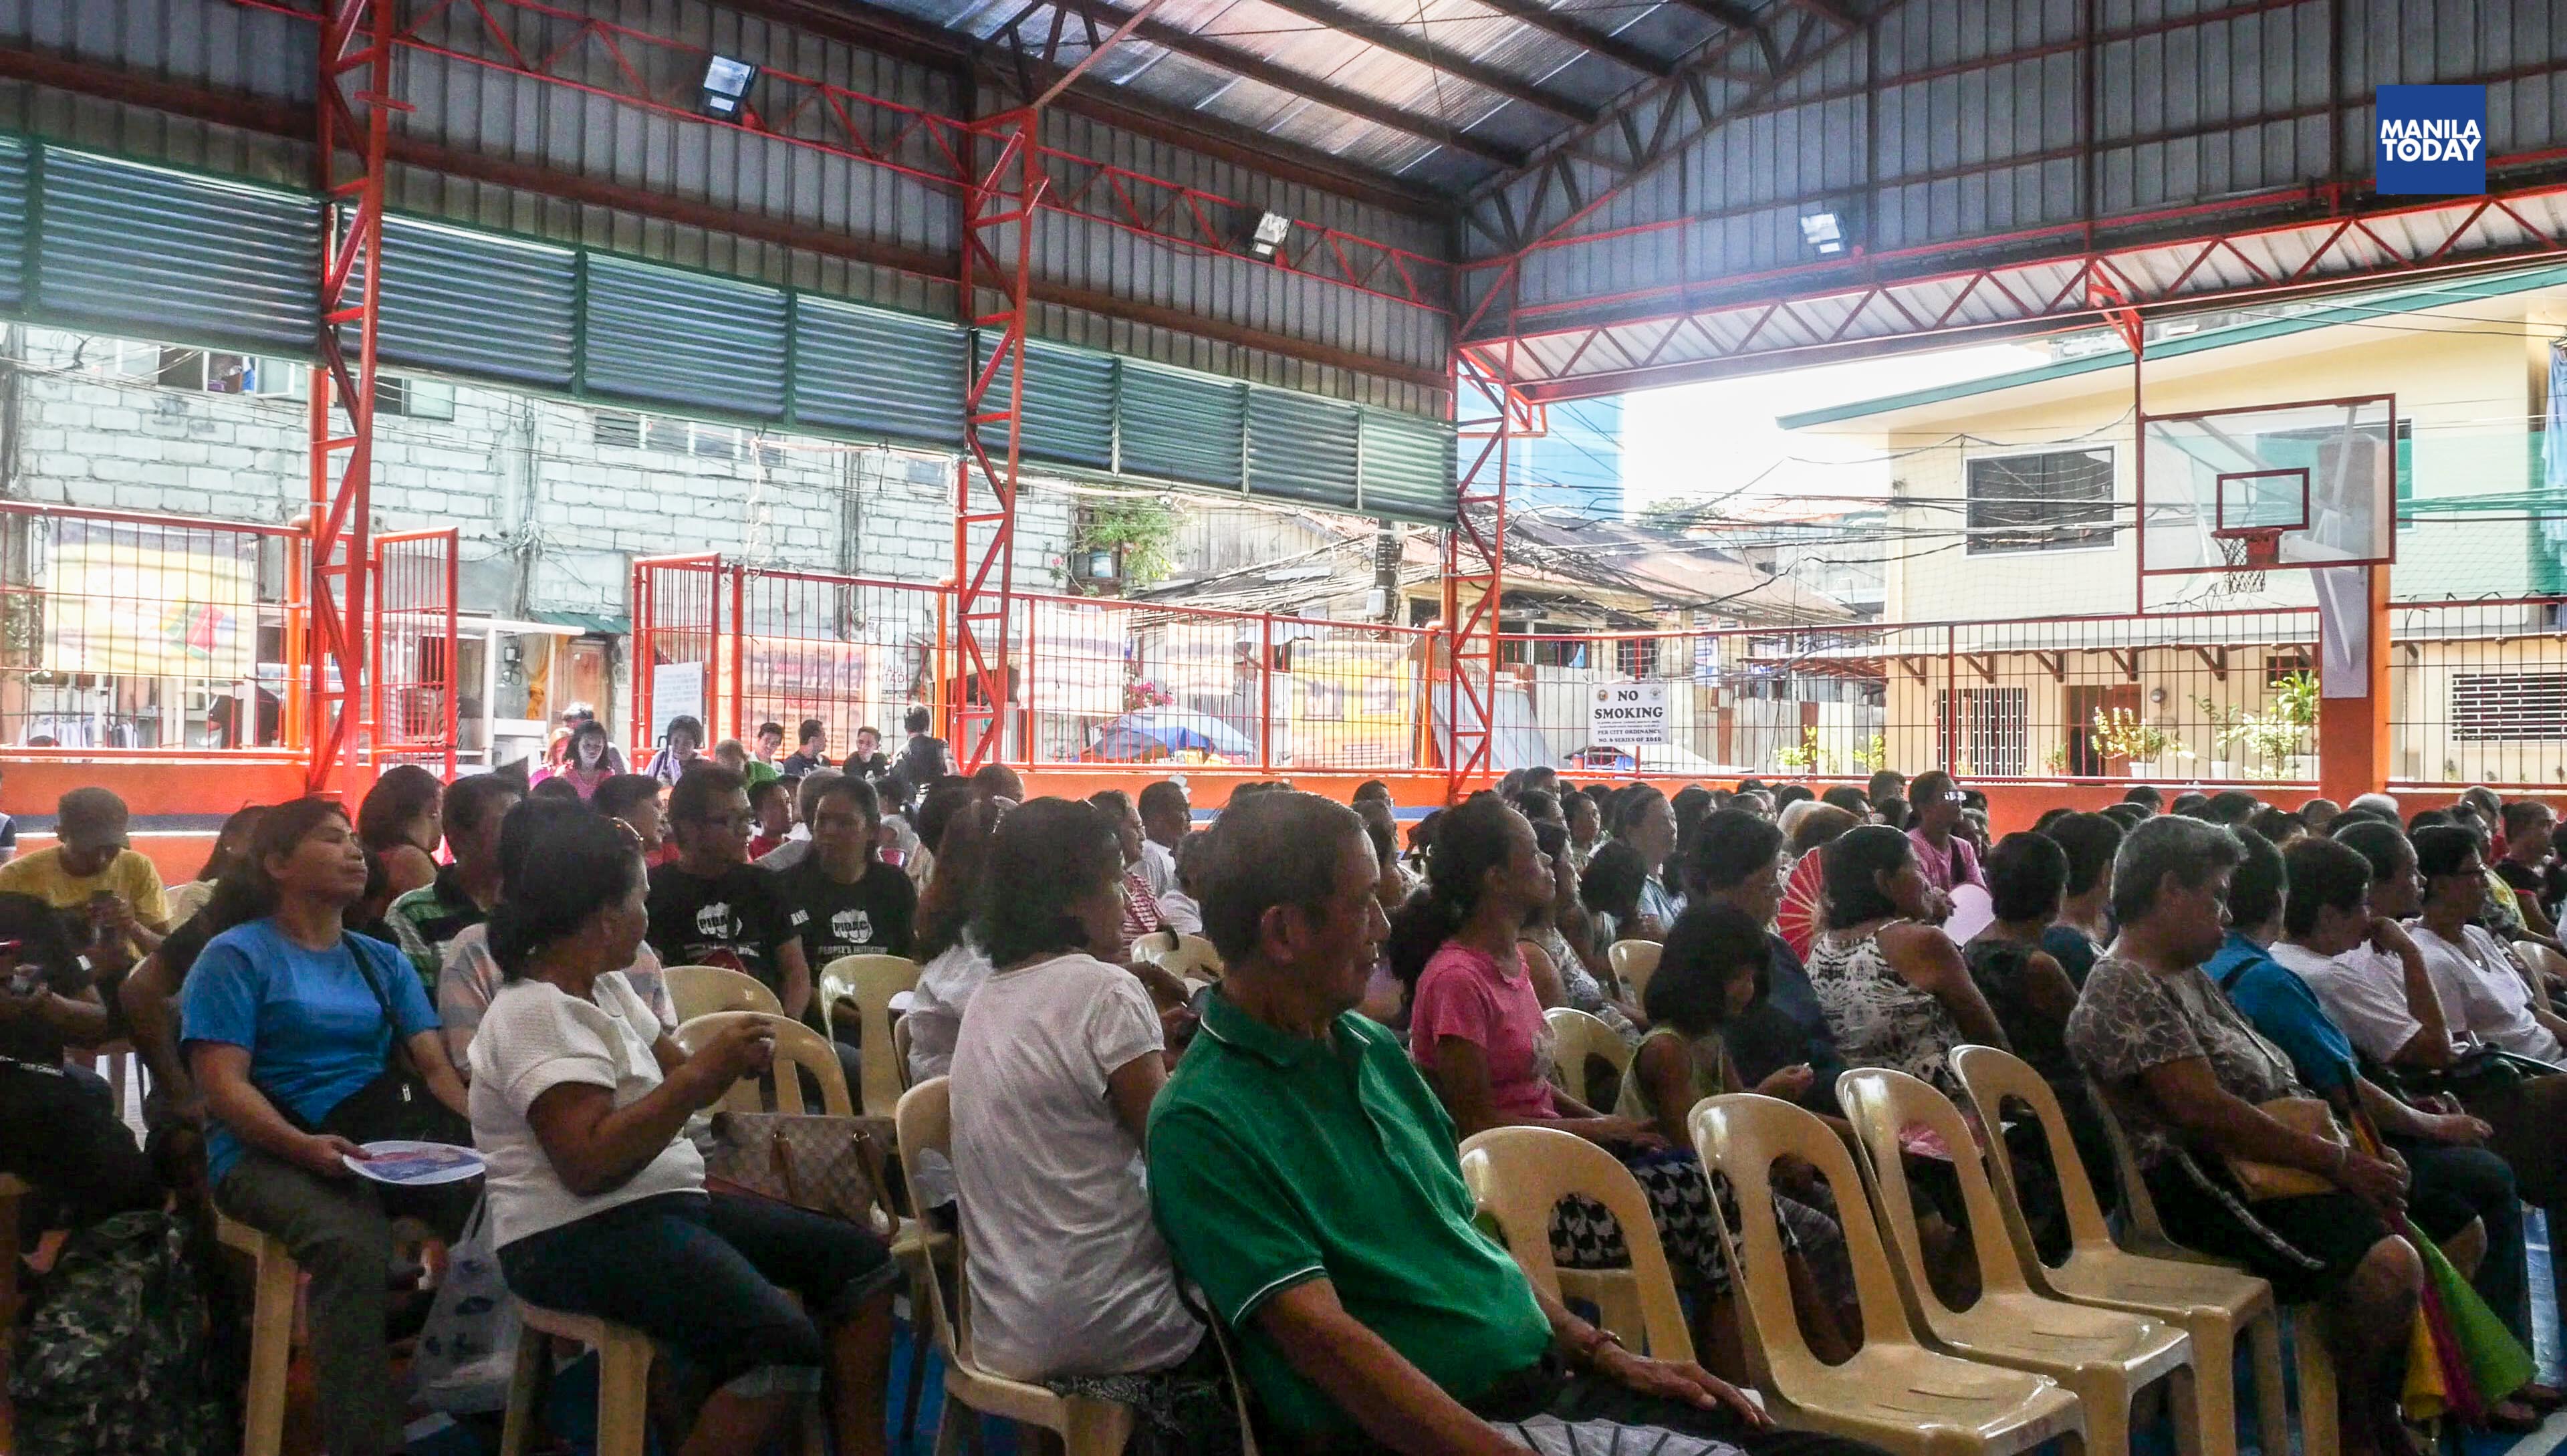 People's assembly sa San Juan noong October 2. (Litrato ng Manila Today/Tudla Productions)